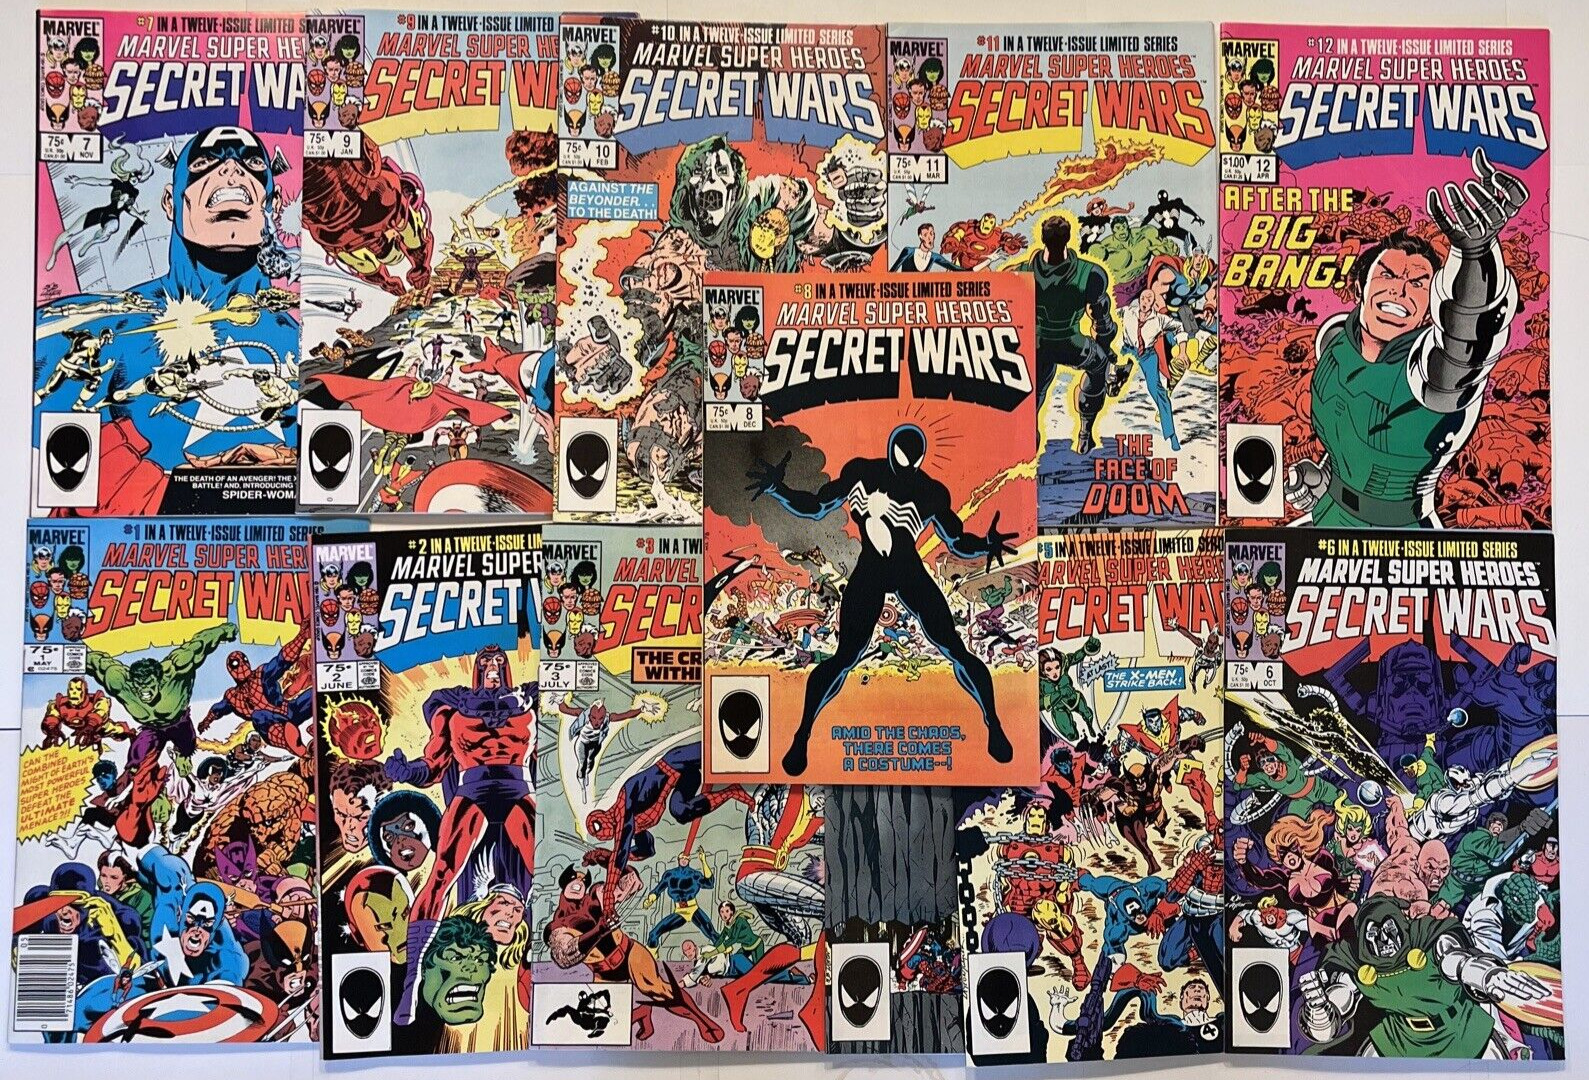 MARVEL SUPER HEROES SECRET WARS (1984) 12 ISSUE COMPLETE SET 1-12 MARVEL COMICS